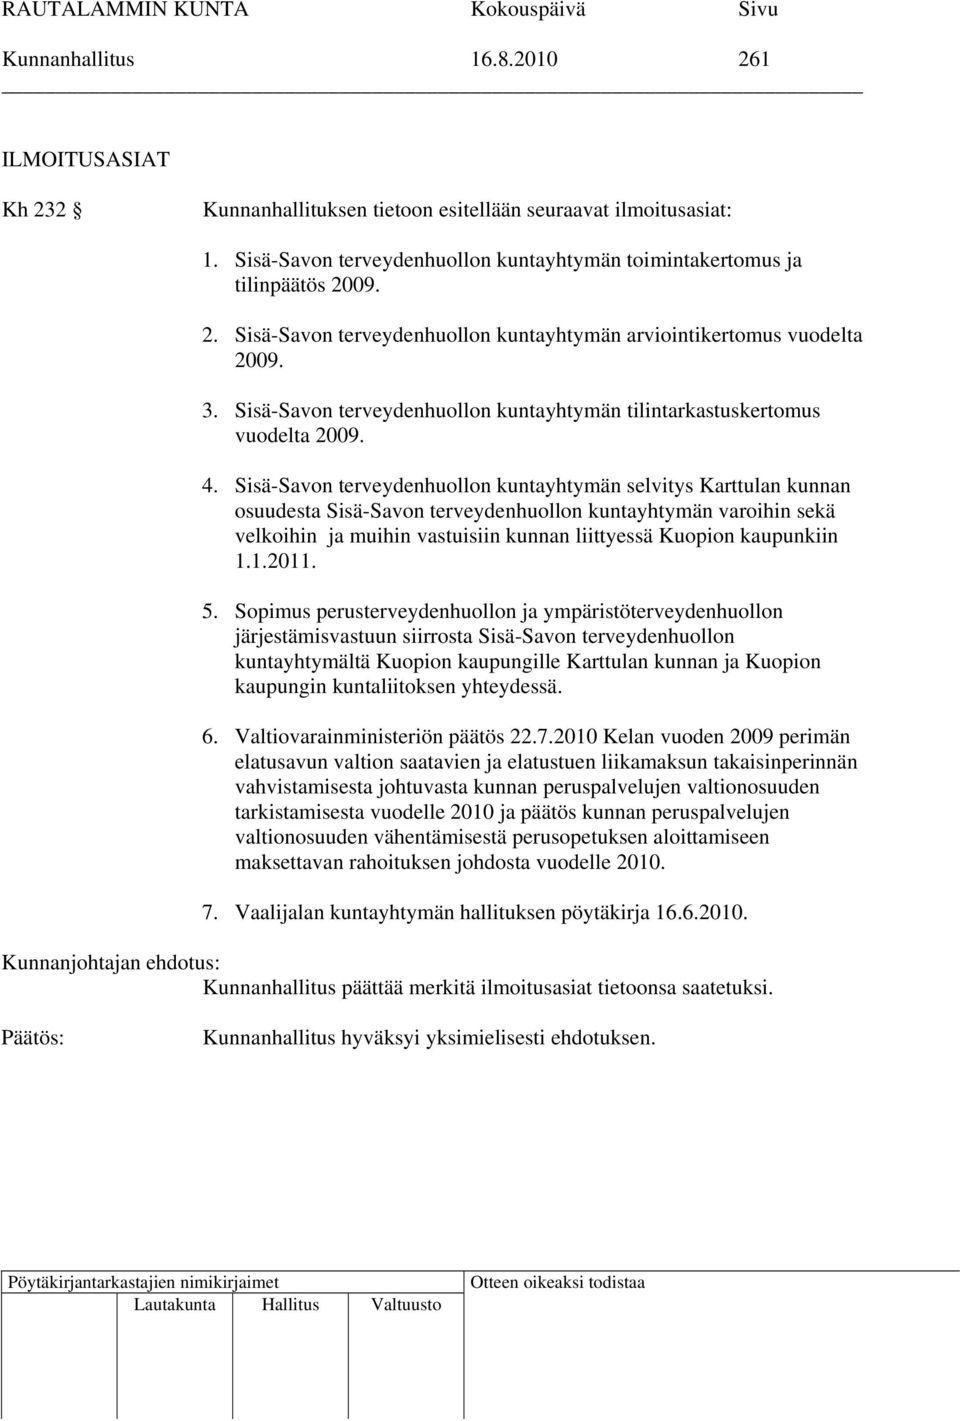 Sisä-Savon terveydenhuollon kuntayhtymän selvitys Karttulan kunnan osuudesta Sisä-Savon terveydenhuollon kuntayhtymän varoihin sekä velkoihin ja muihin vastuisiin kunnan liittyessä Kuopion kaupunkiin